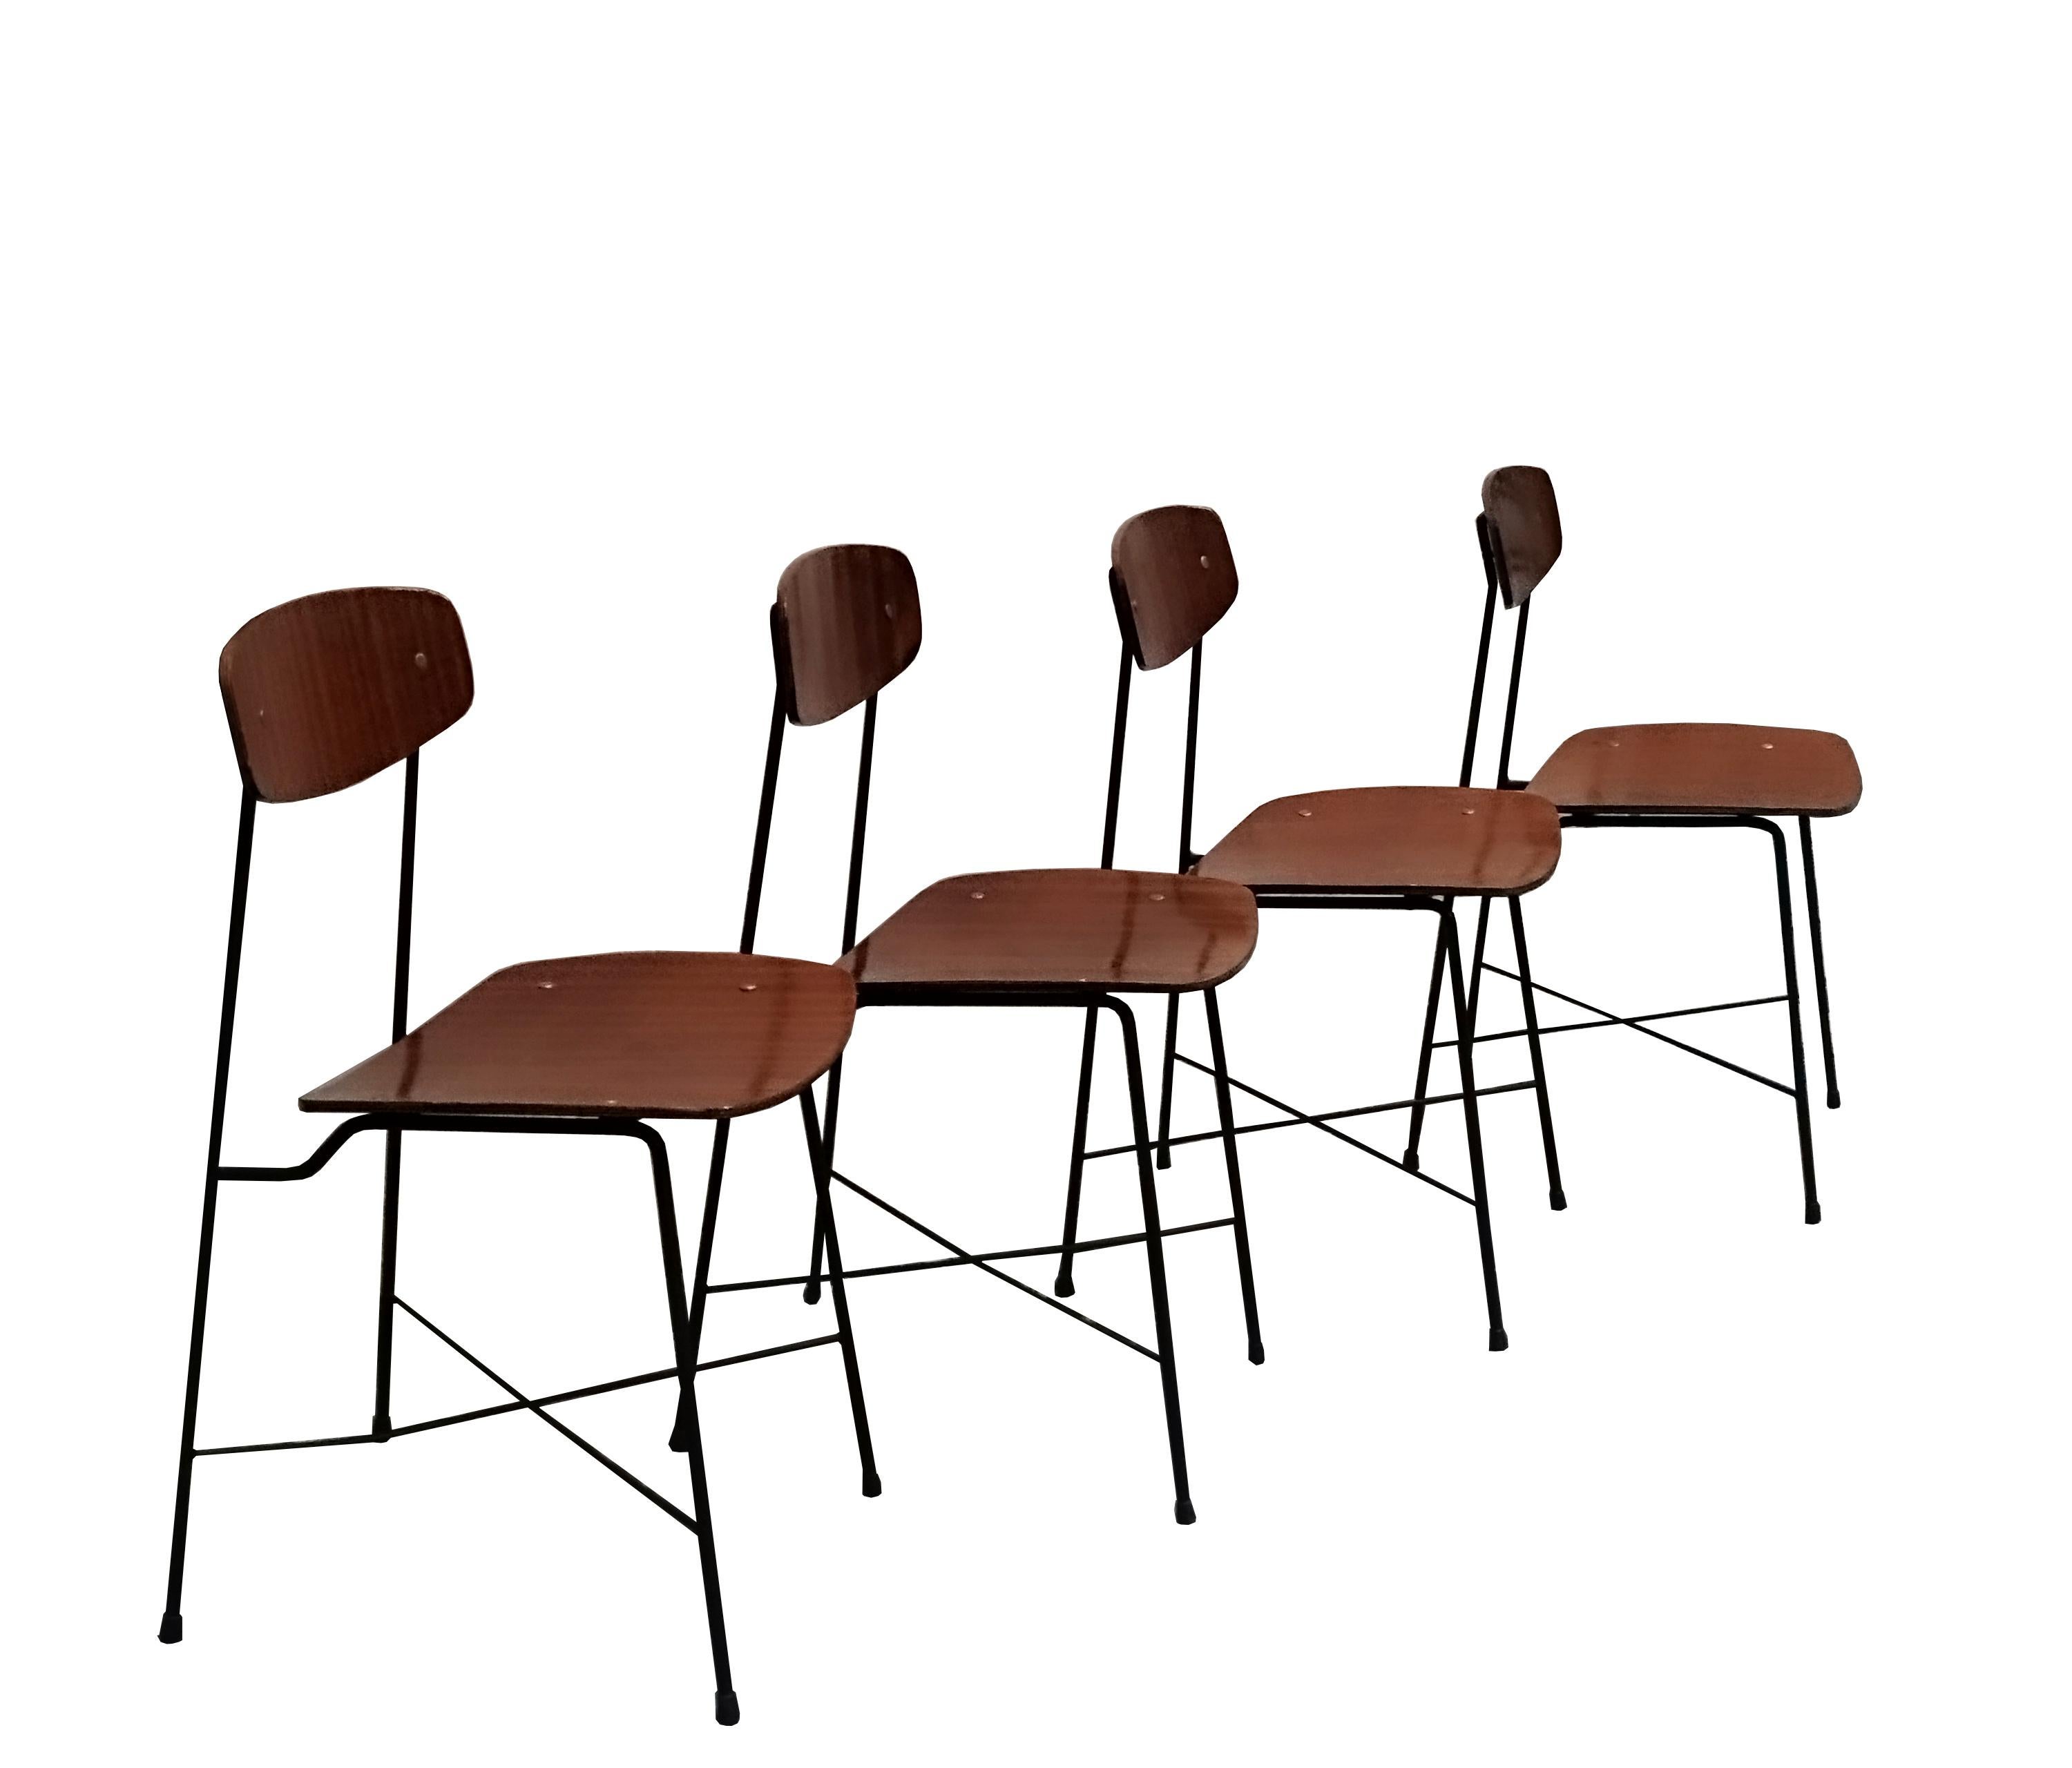 Satz  von  vier Stühle, entworfen von George Coslin und hergestellt von Faram, Italien, 1950er Jahre. Schwarz lackierte Rohr- und Metallstangen, Sitz und Rückenlehne aus Teak-Sperrholz. 

Literaturverzeichnis
